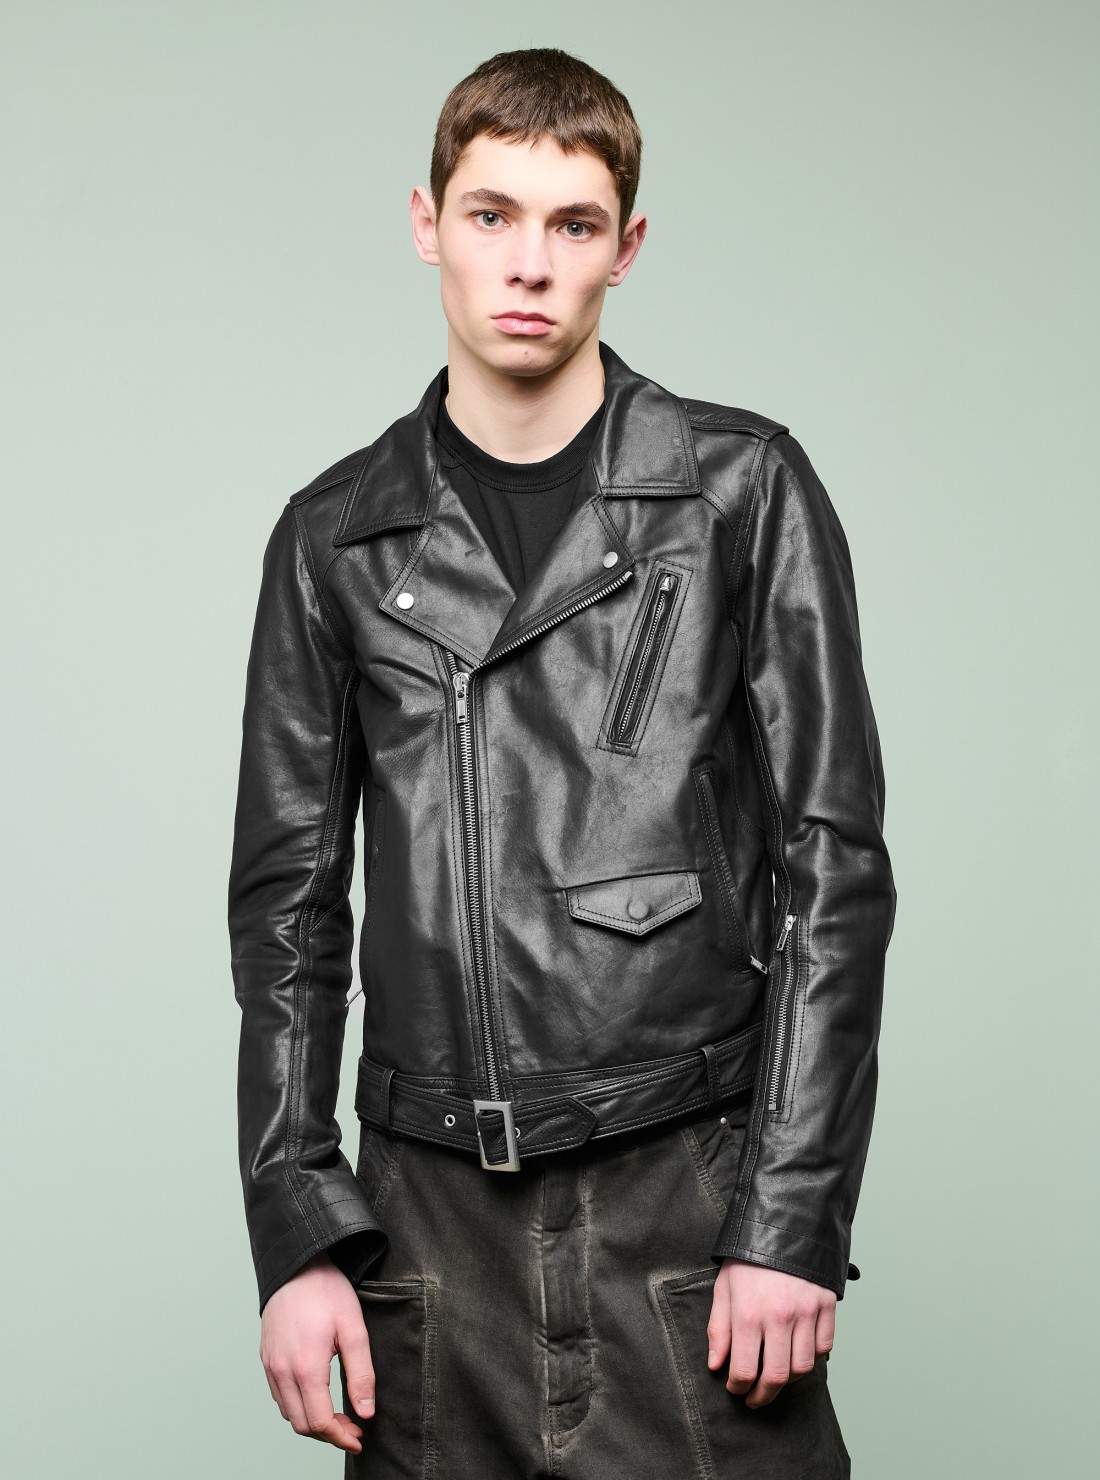 Lukes Leather Jacket